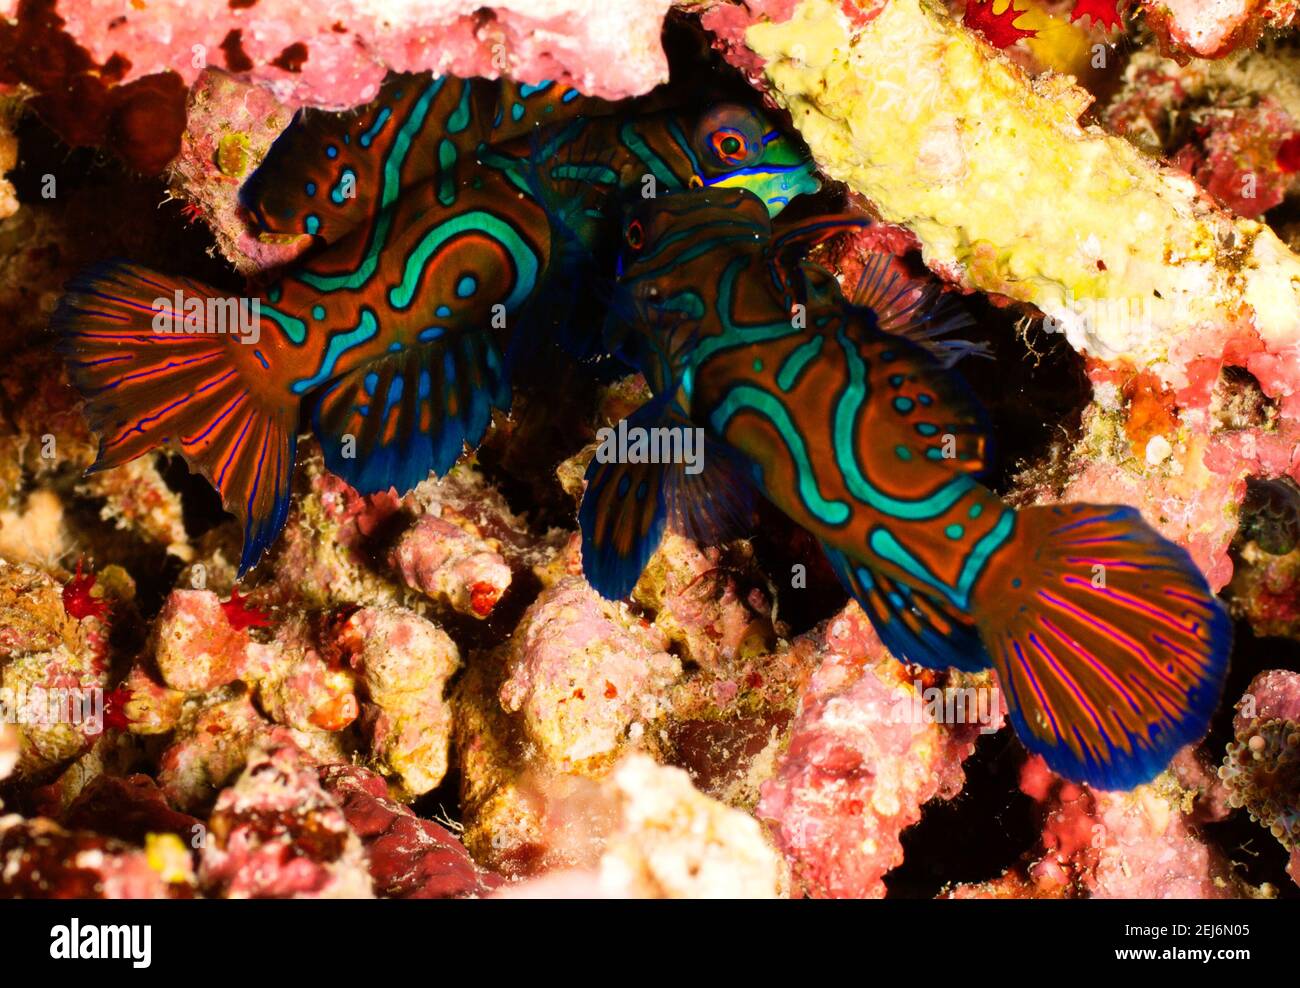 Pom Pom Island Malaysia Two Mandarin fish or Mandarin dragonet (Synchiropus splendidus) fighting. Stock Photo